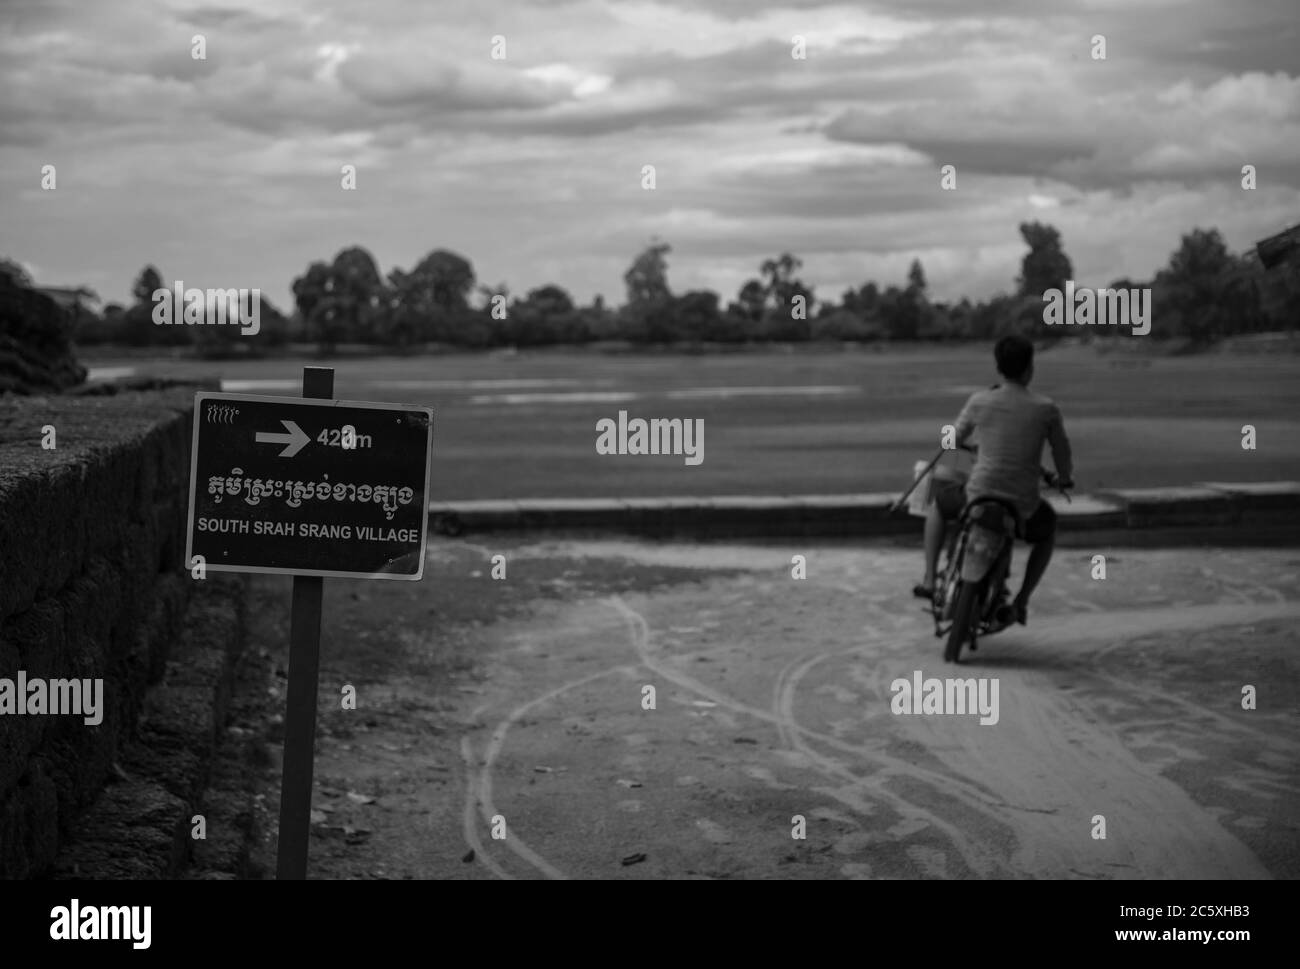 Un jeune homme conduit sa moto sur un chemin vers le village sud de Srah Srang - Angkor Wat, Siem Reap, Cambodge. Banque D'Images